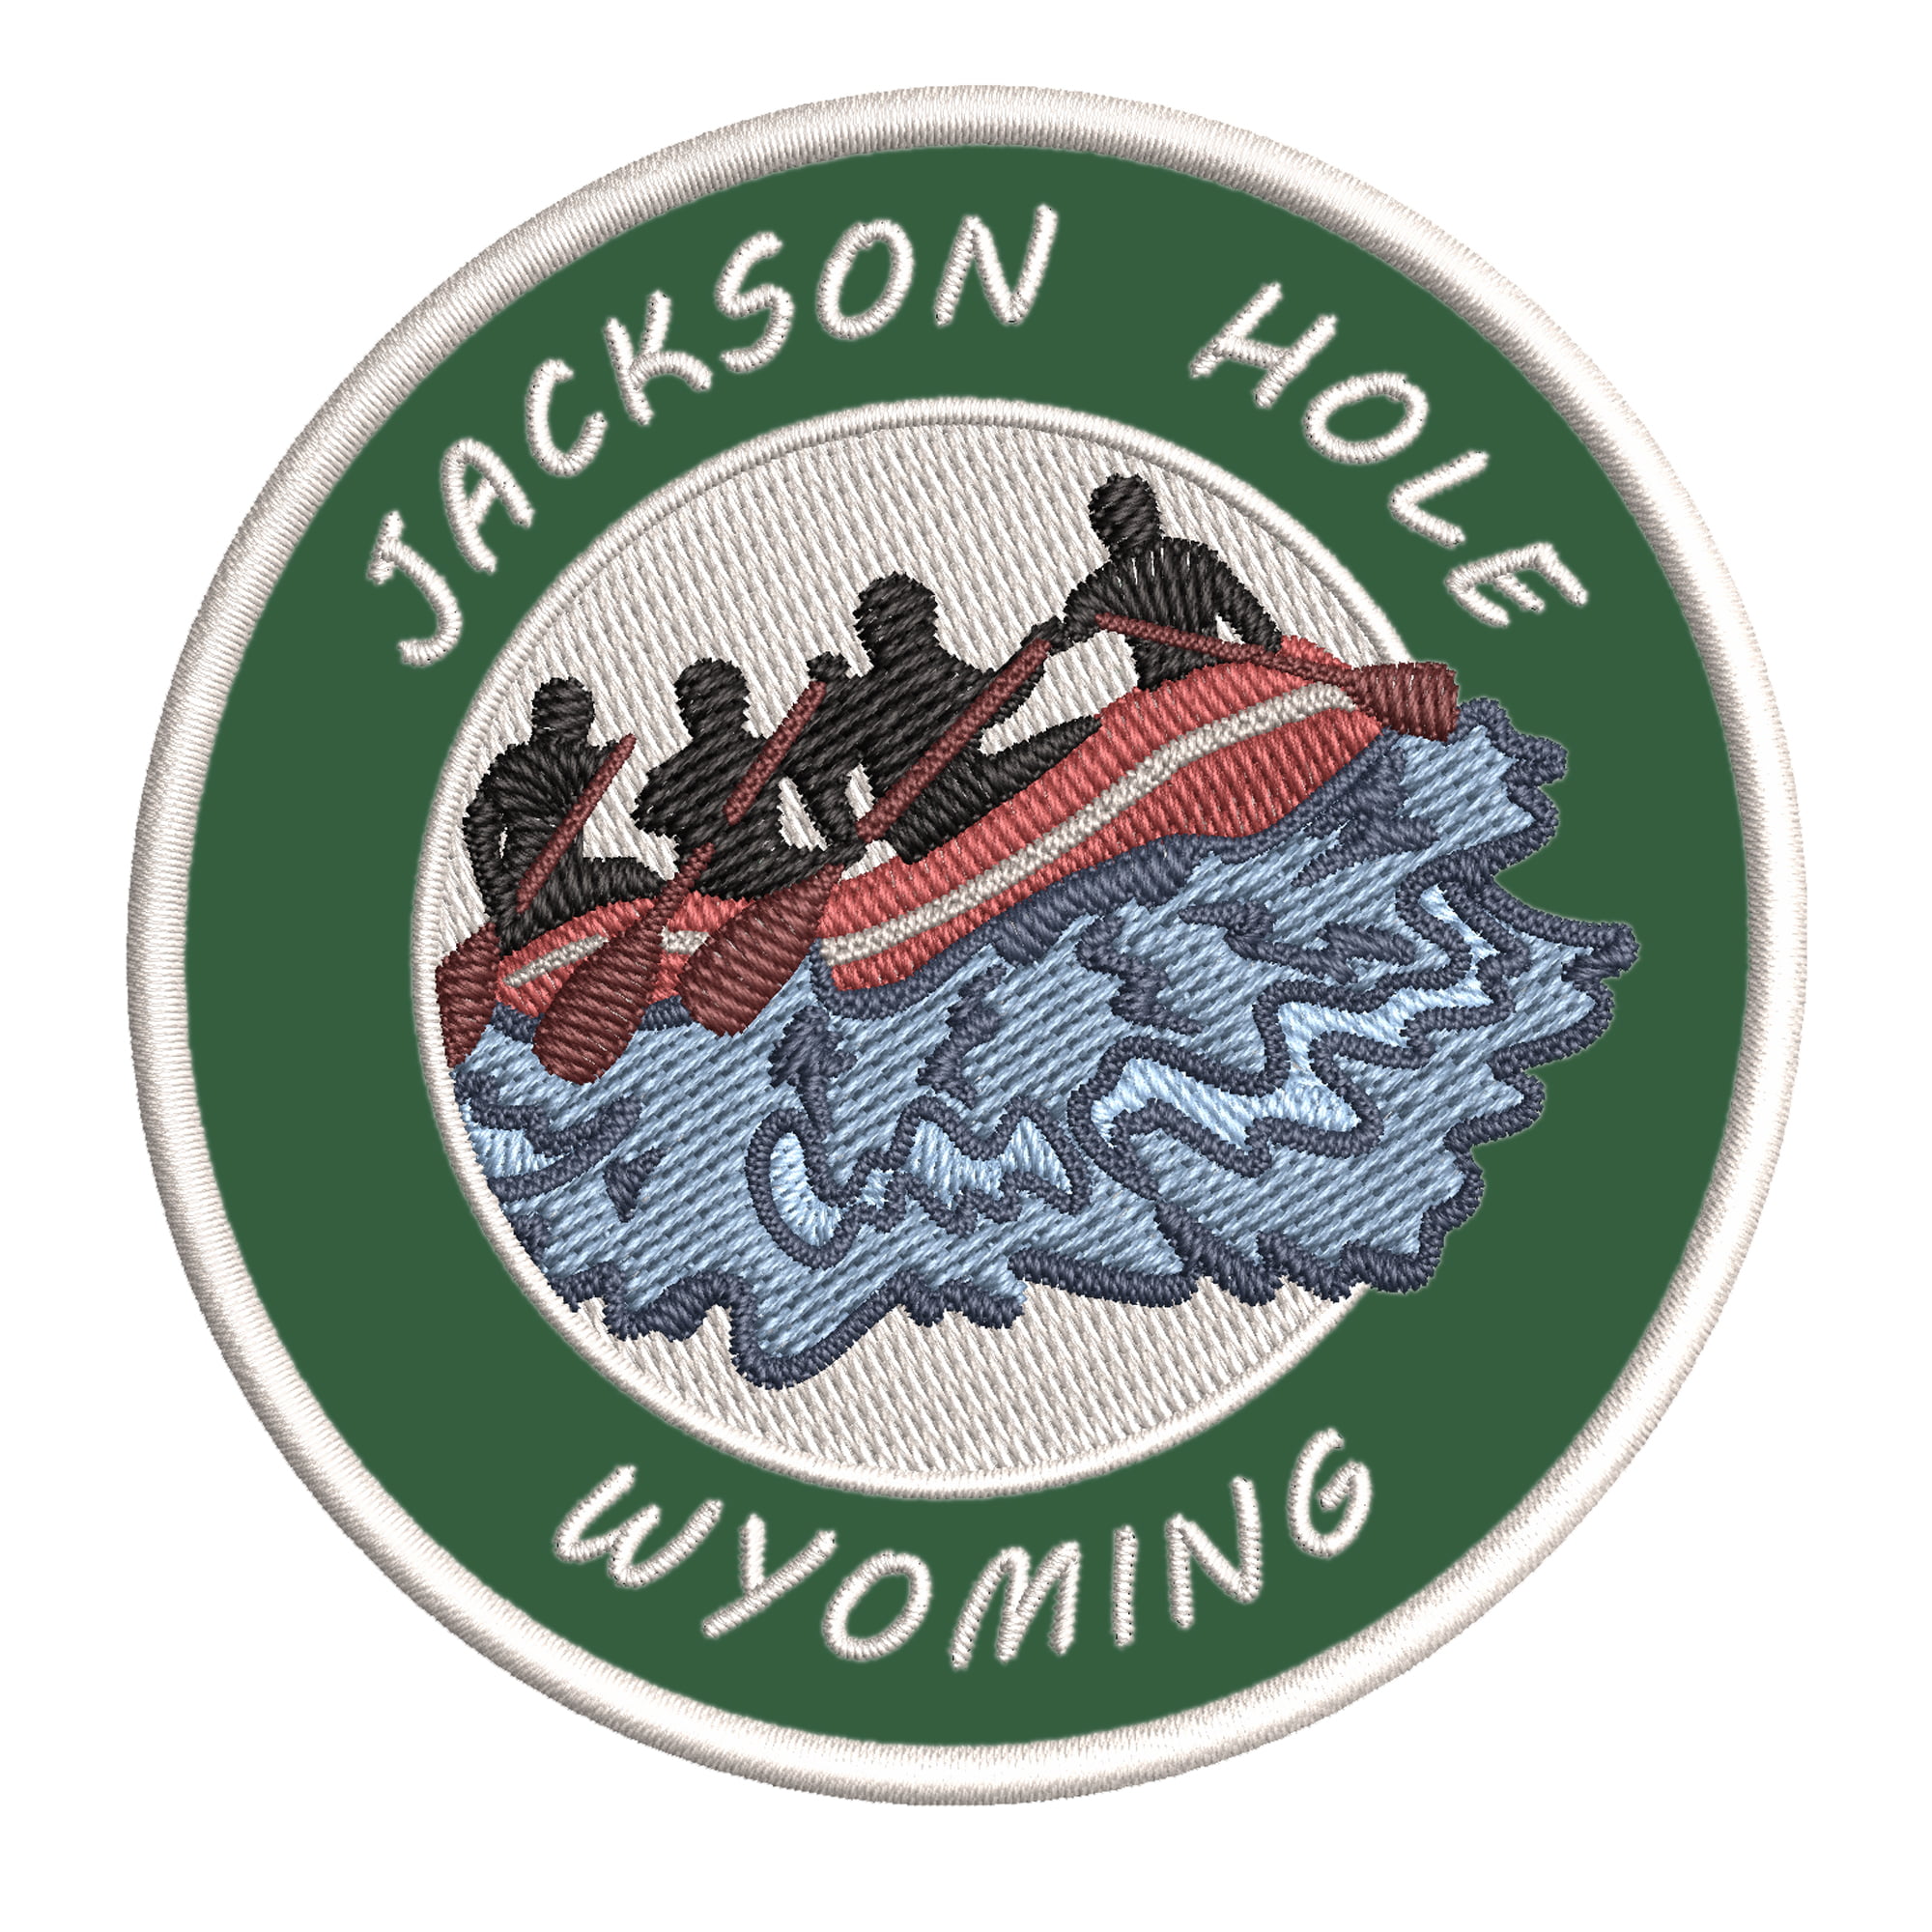 Jackson Hole Wyoming Mountaineering Badge Unisex Infant T-Shirt 